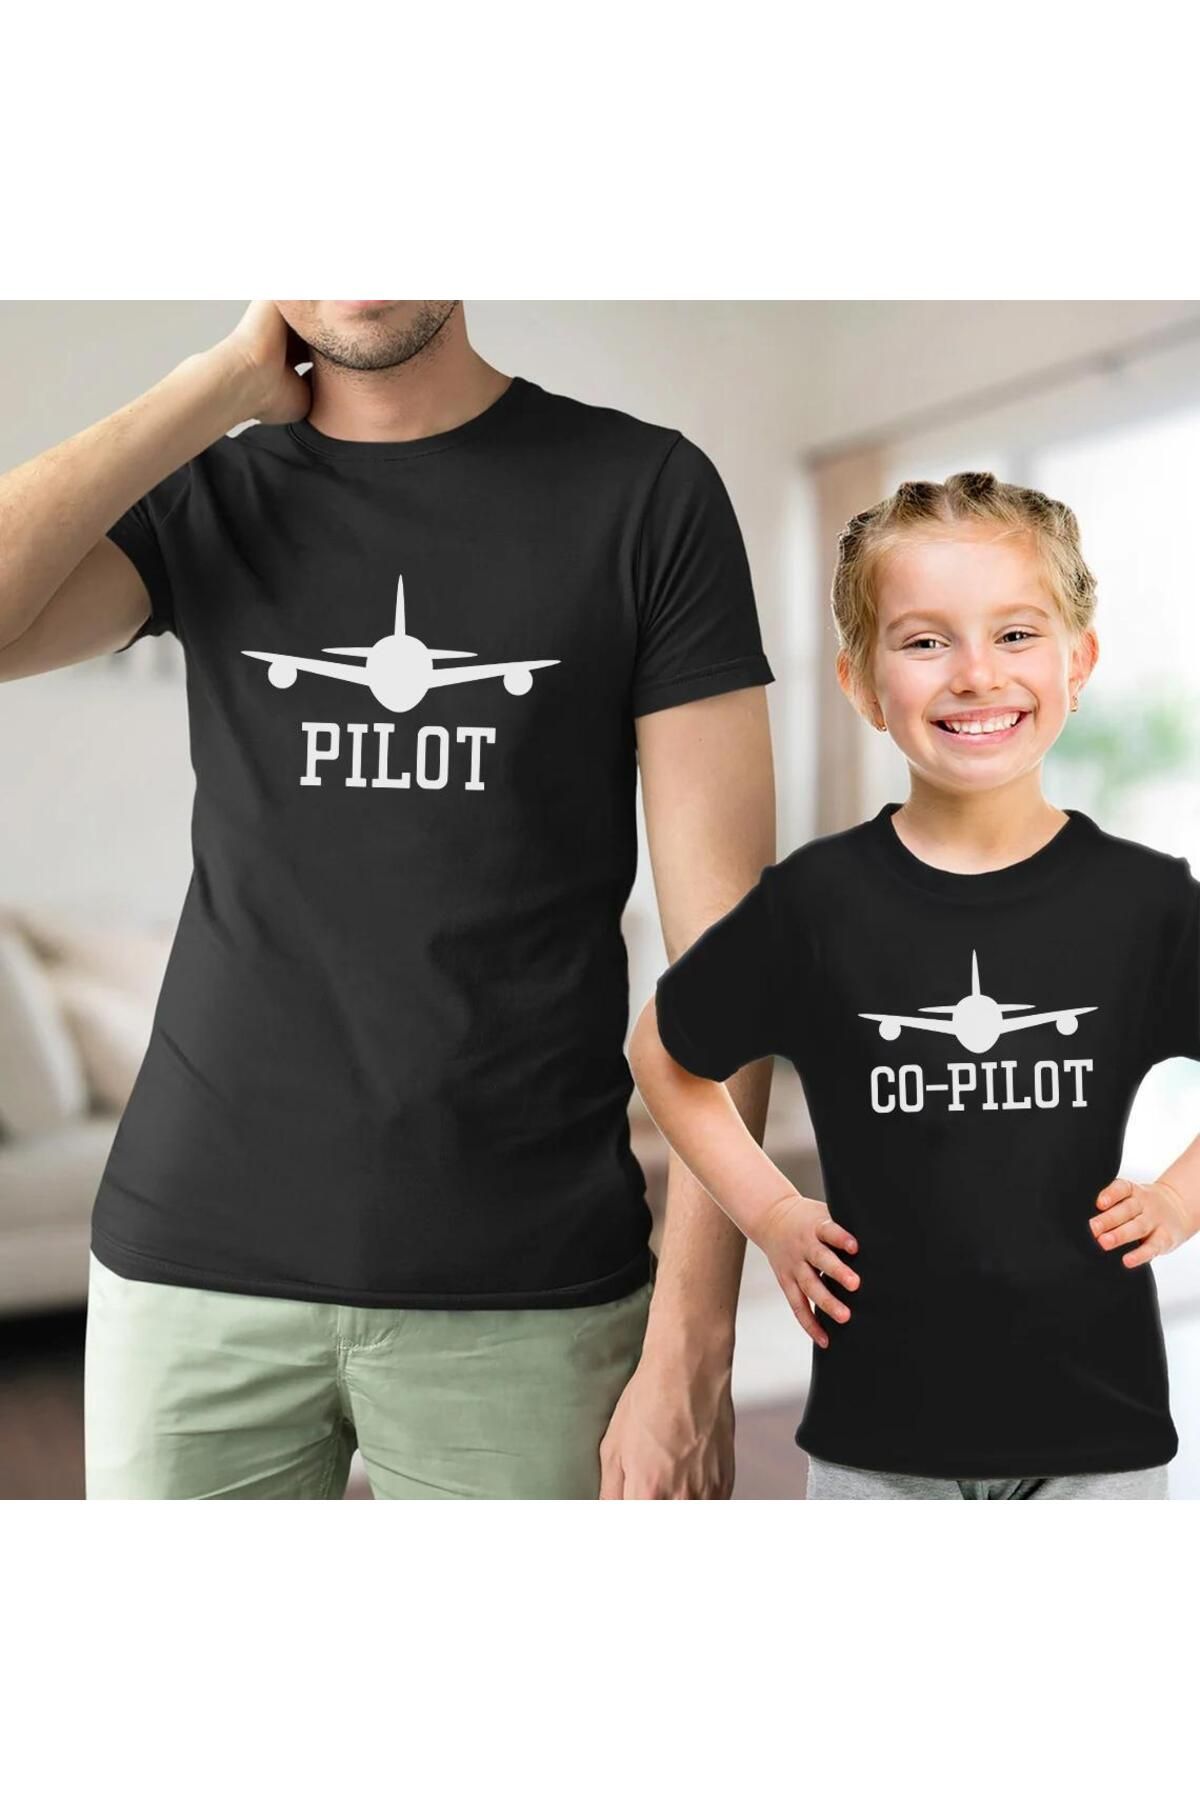 Tshirthane Baba Oğul Kız Pilot Co-pilot Tişört (TEK ÜRÜN FİYATIDIR KOMBİN YAPMAK İÇİN 2 ADET SEPETE EKLEYİNİZ)